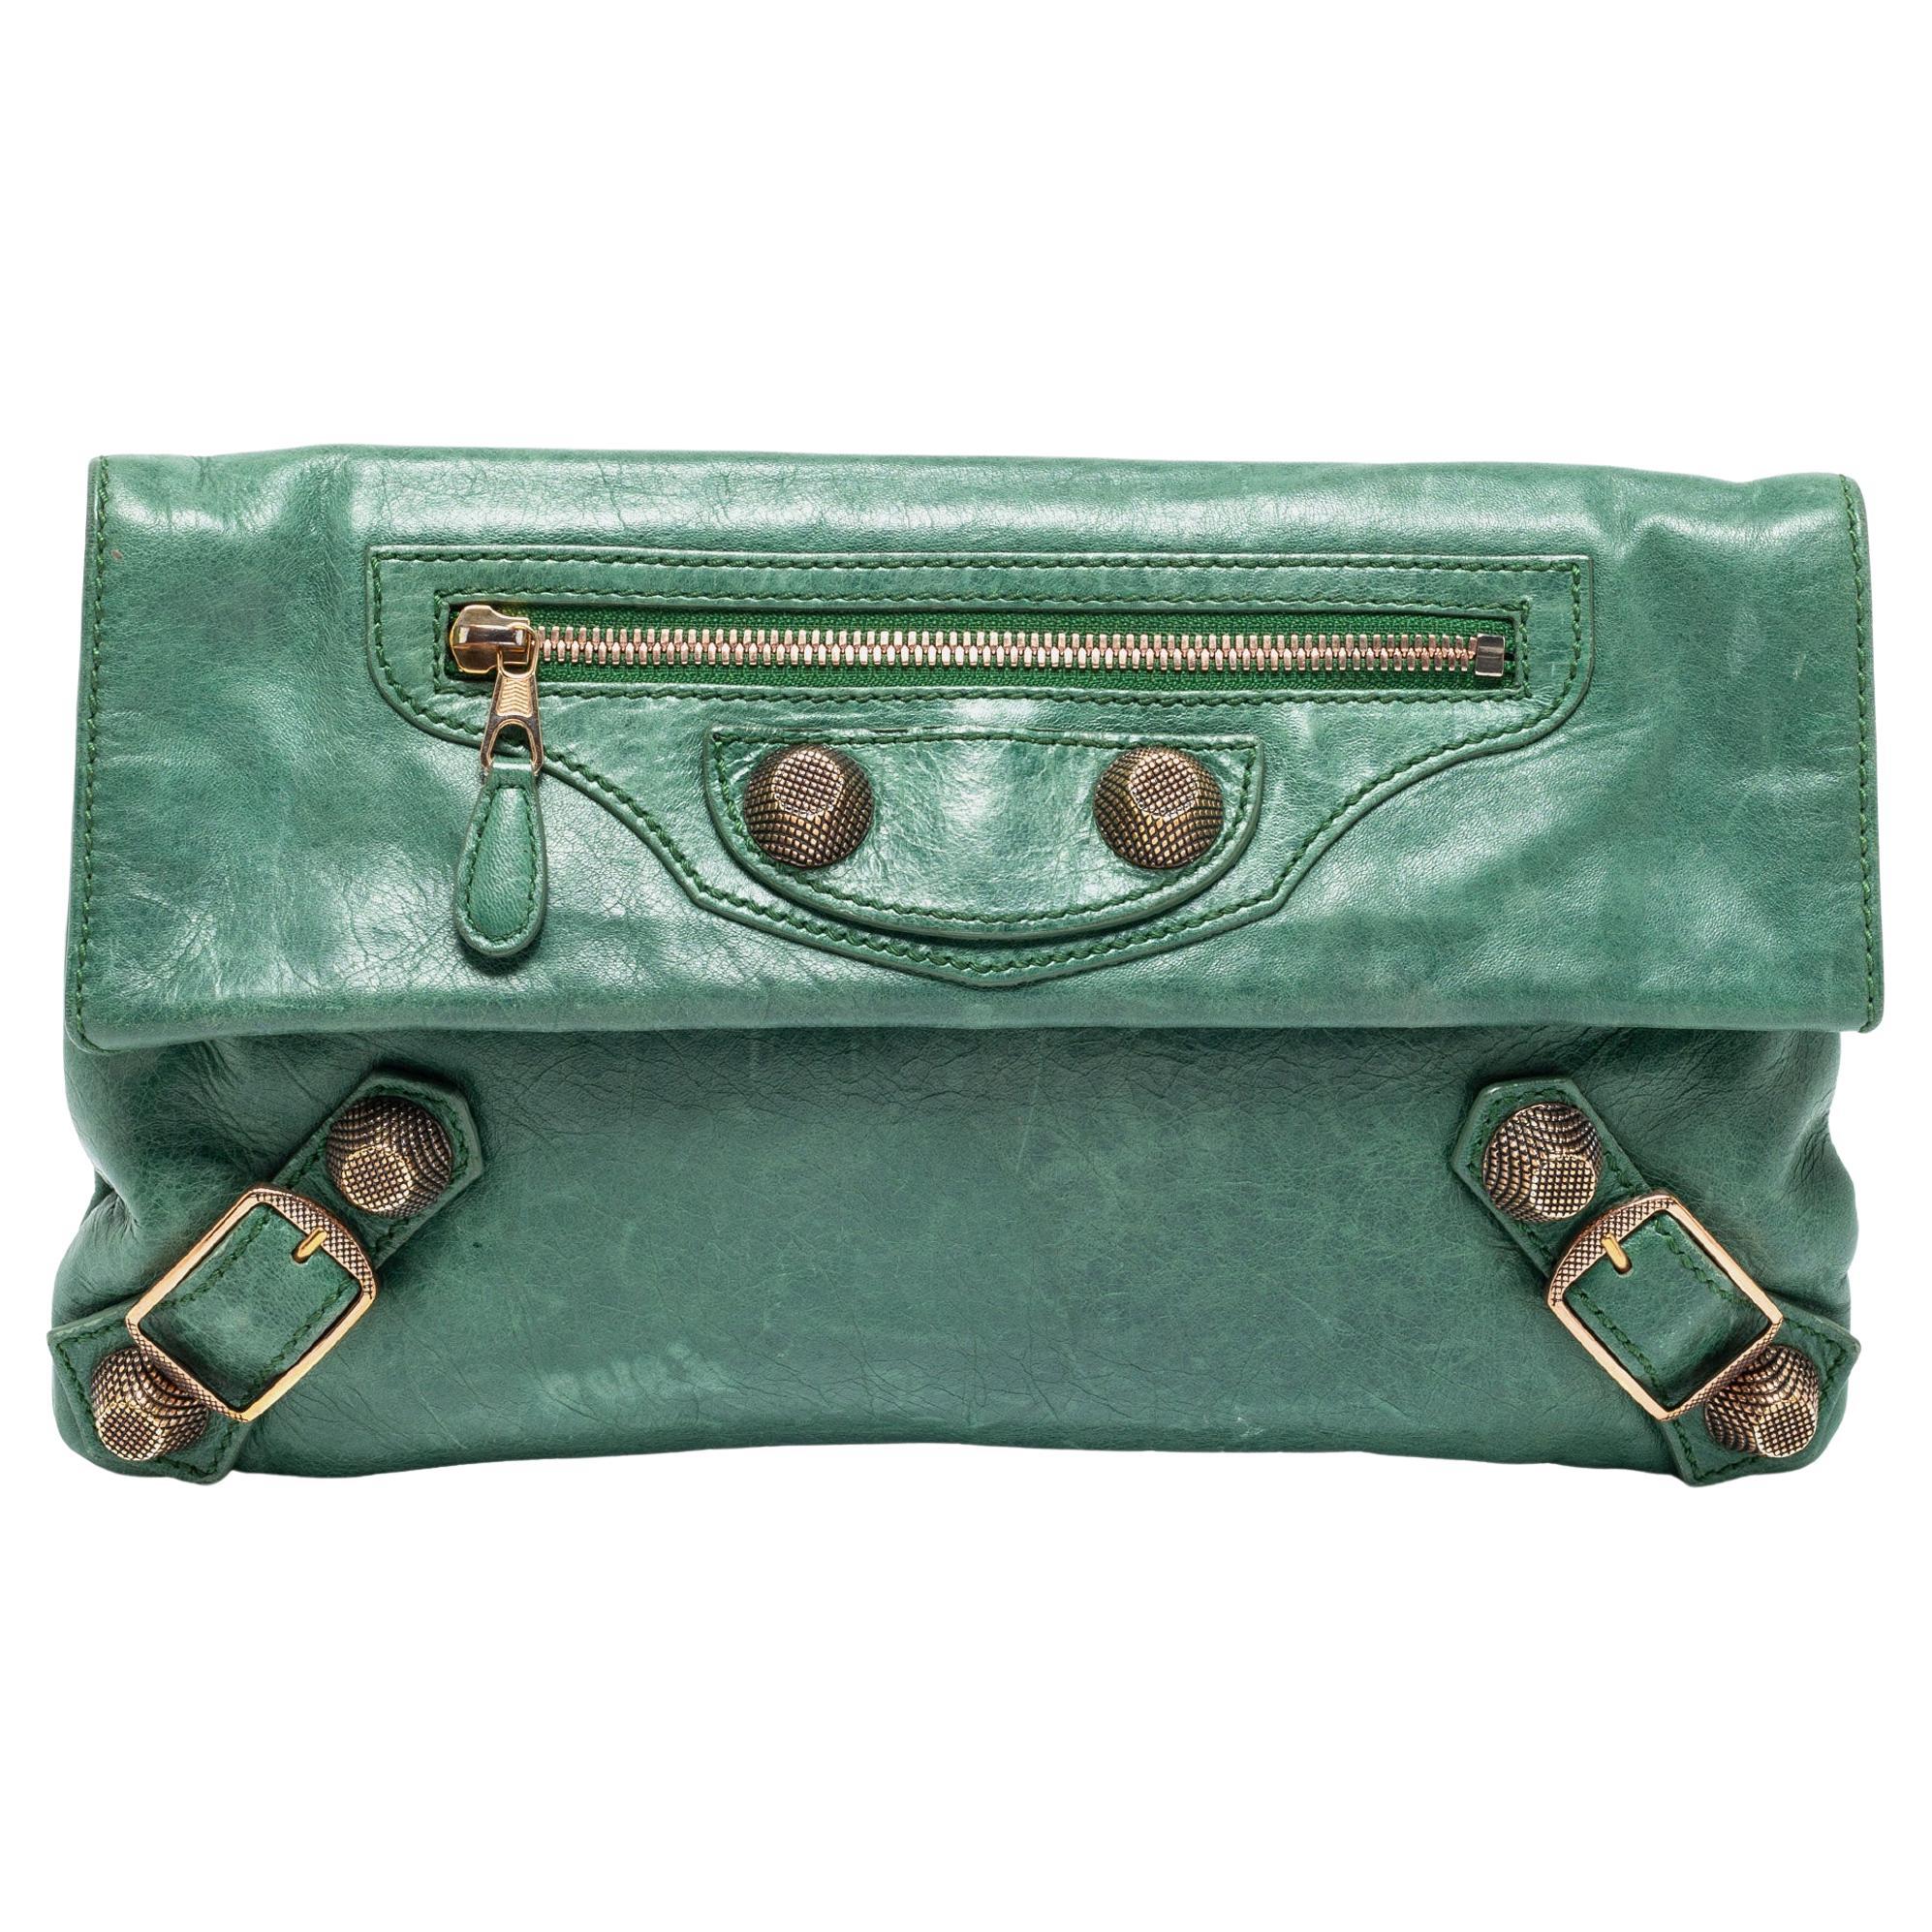 Balenciaga Green Leather GGH Envelope Clutch